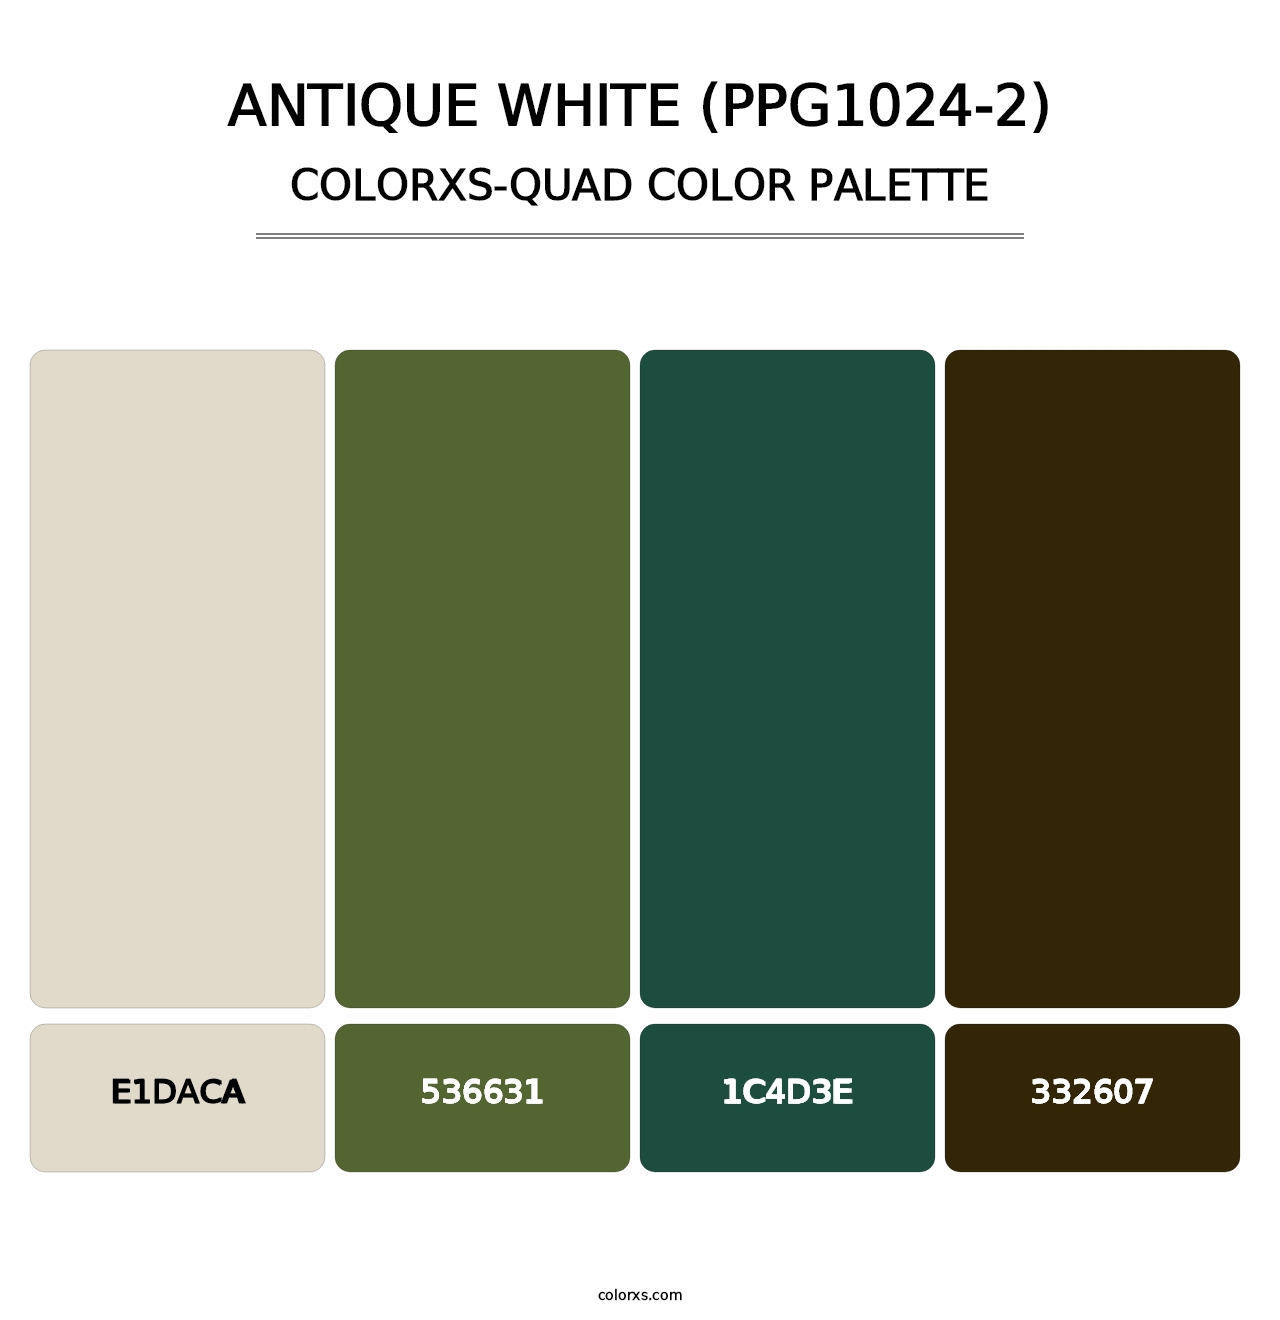 Antique White (PPG1024-2) - Colorxs Quad Palette